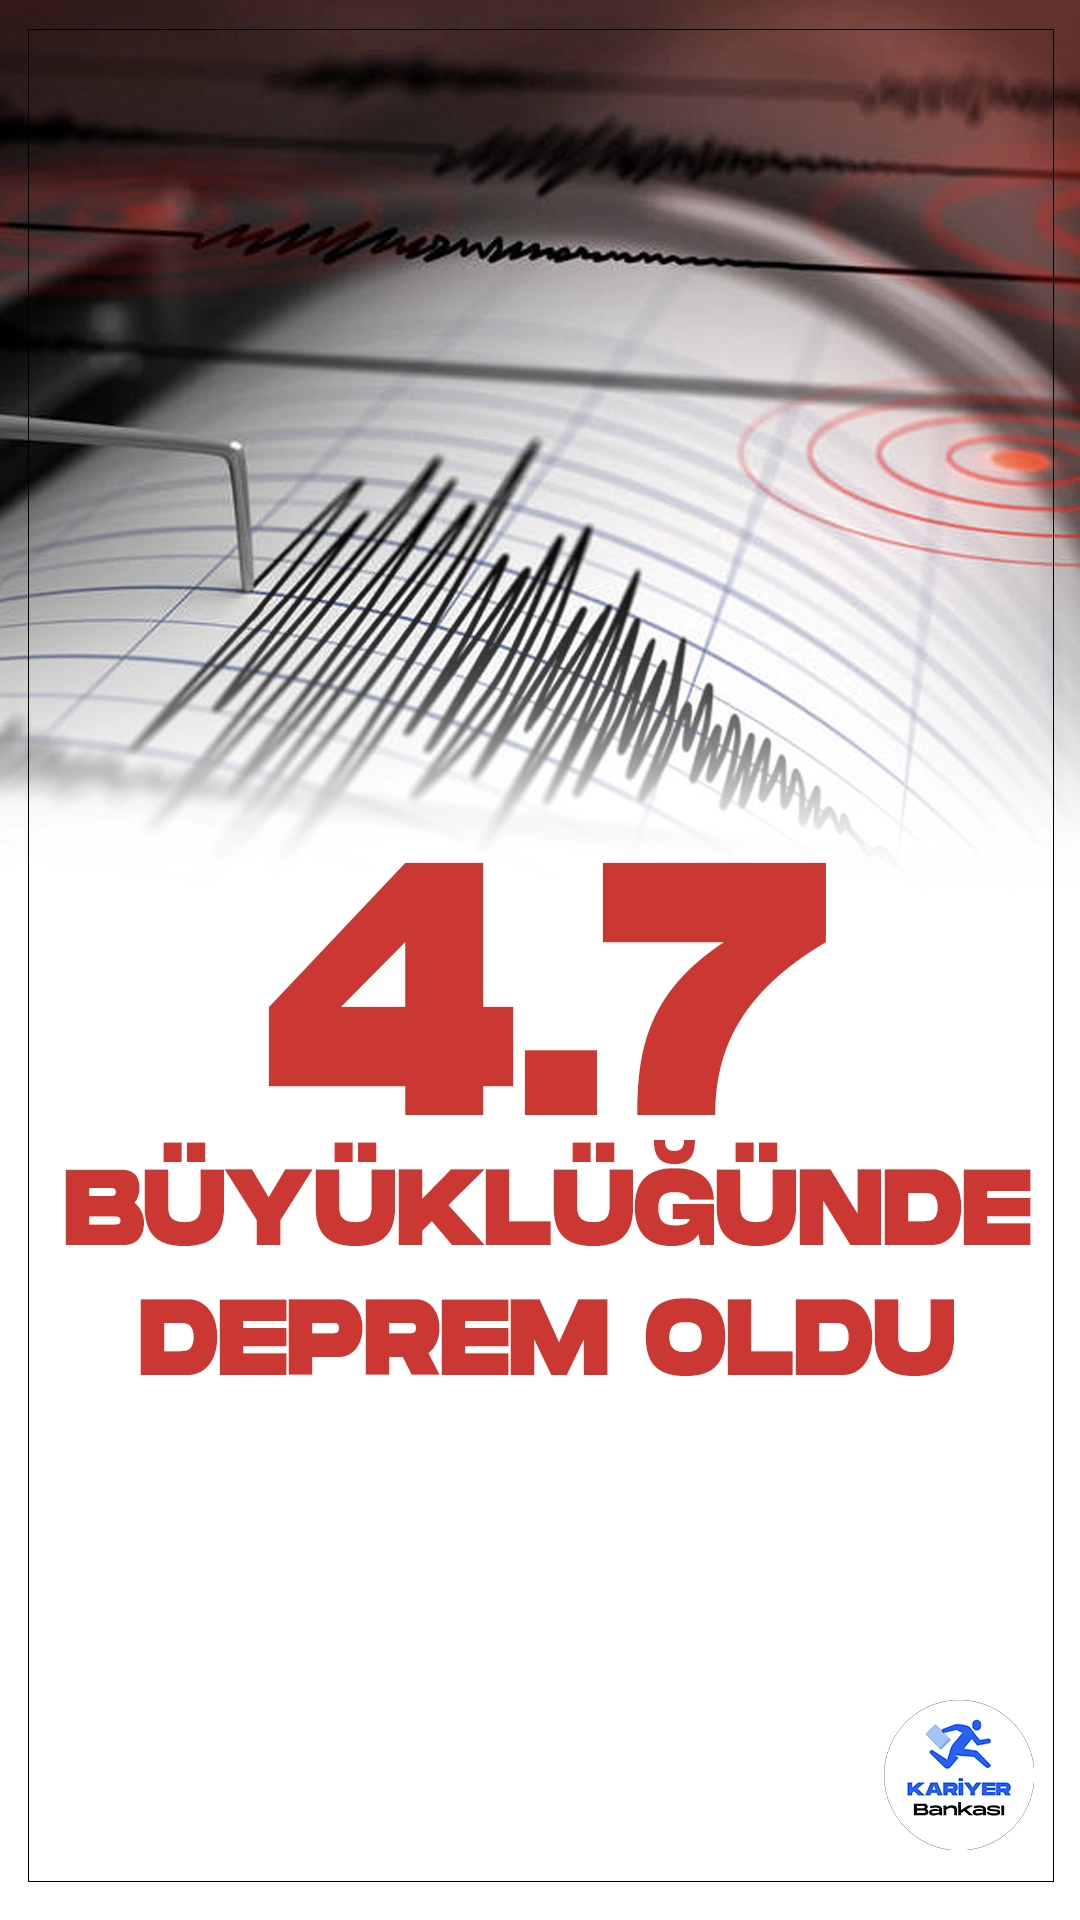 Antalya Açıklarında 4.7 Büyüklüğünde Deprem Oldu. İçişleri Bakanlığı Afet ve Acil Durum Yönetimi Başkanlığı Deprem Dairesi tarafından yayımlanan son dakika verilerine göre, Antalya Demre' de 4.7 büyüklüğünde deprem meydana geldi.